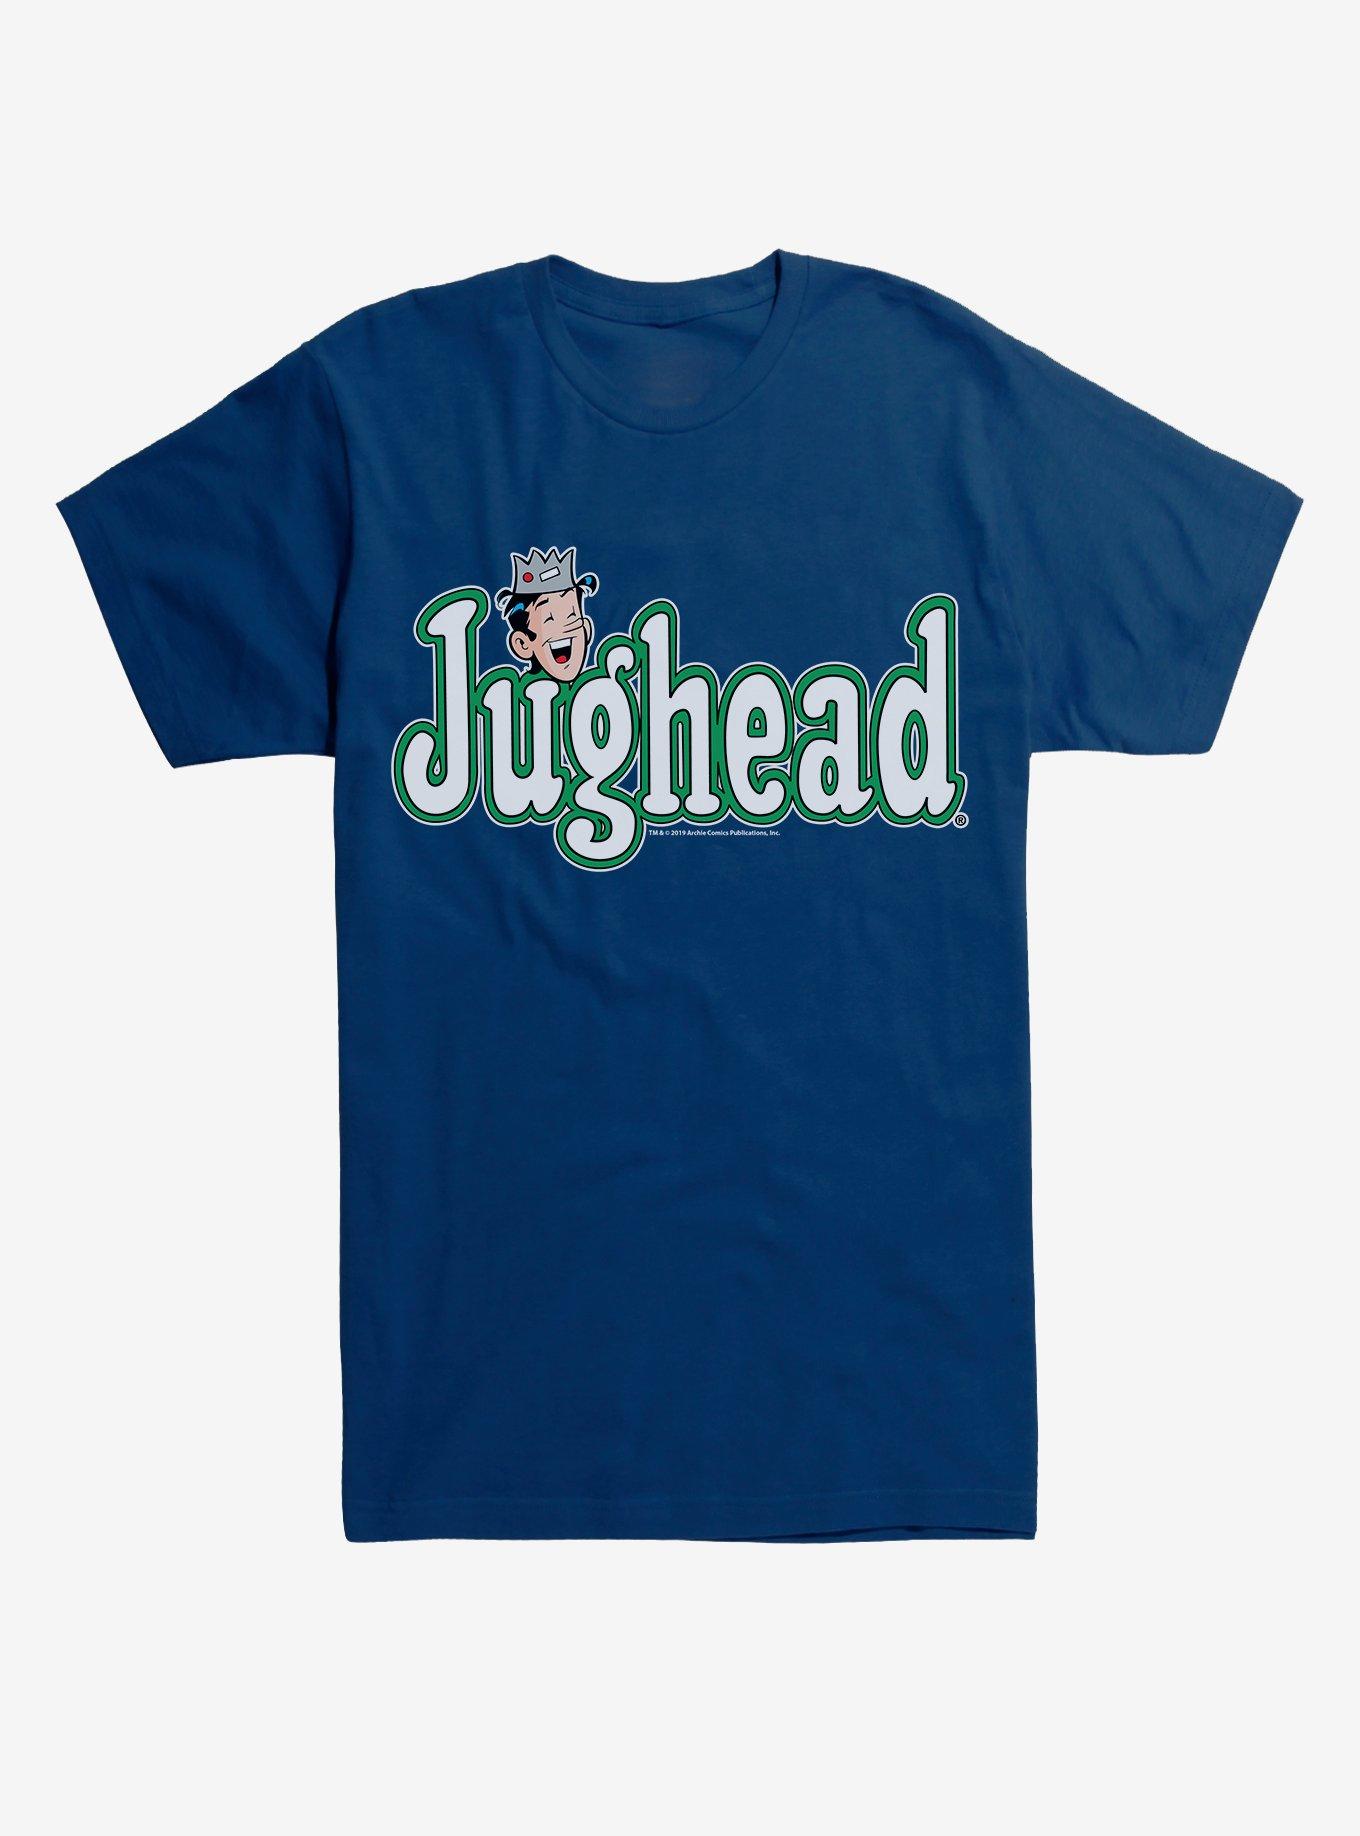 Archie Comics Jughead T-Shirt, NAVY, hi-res